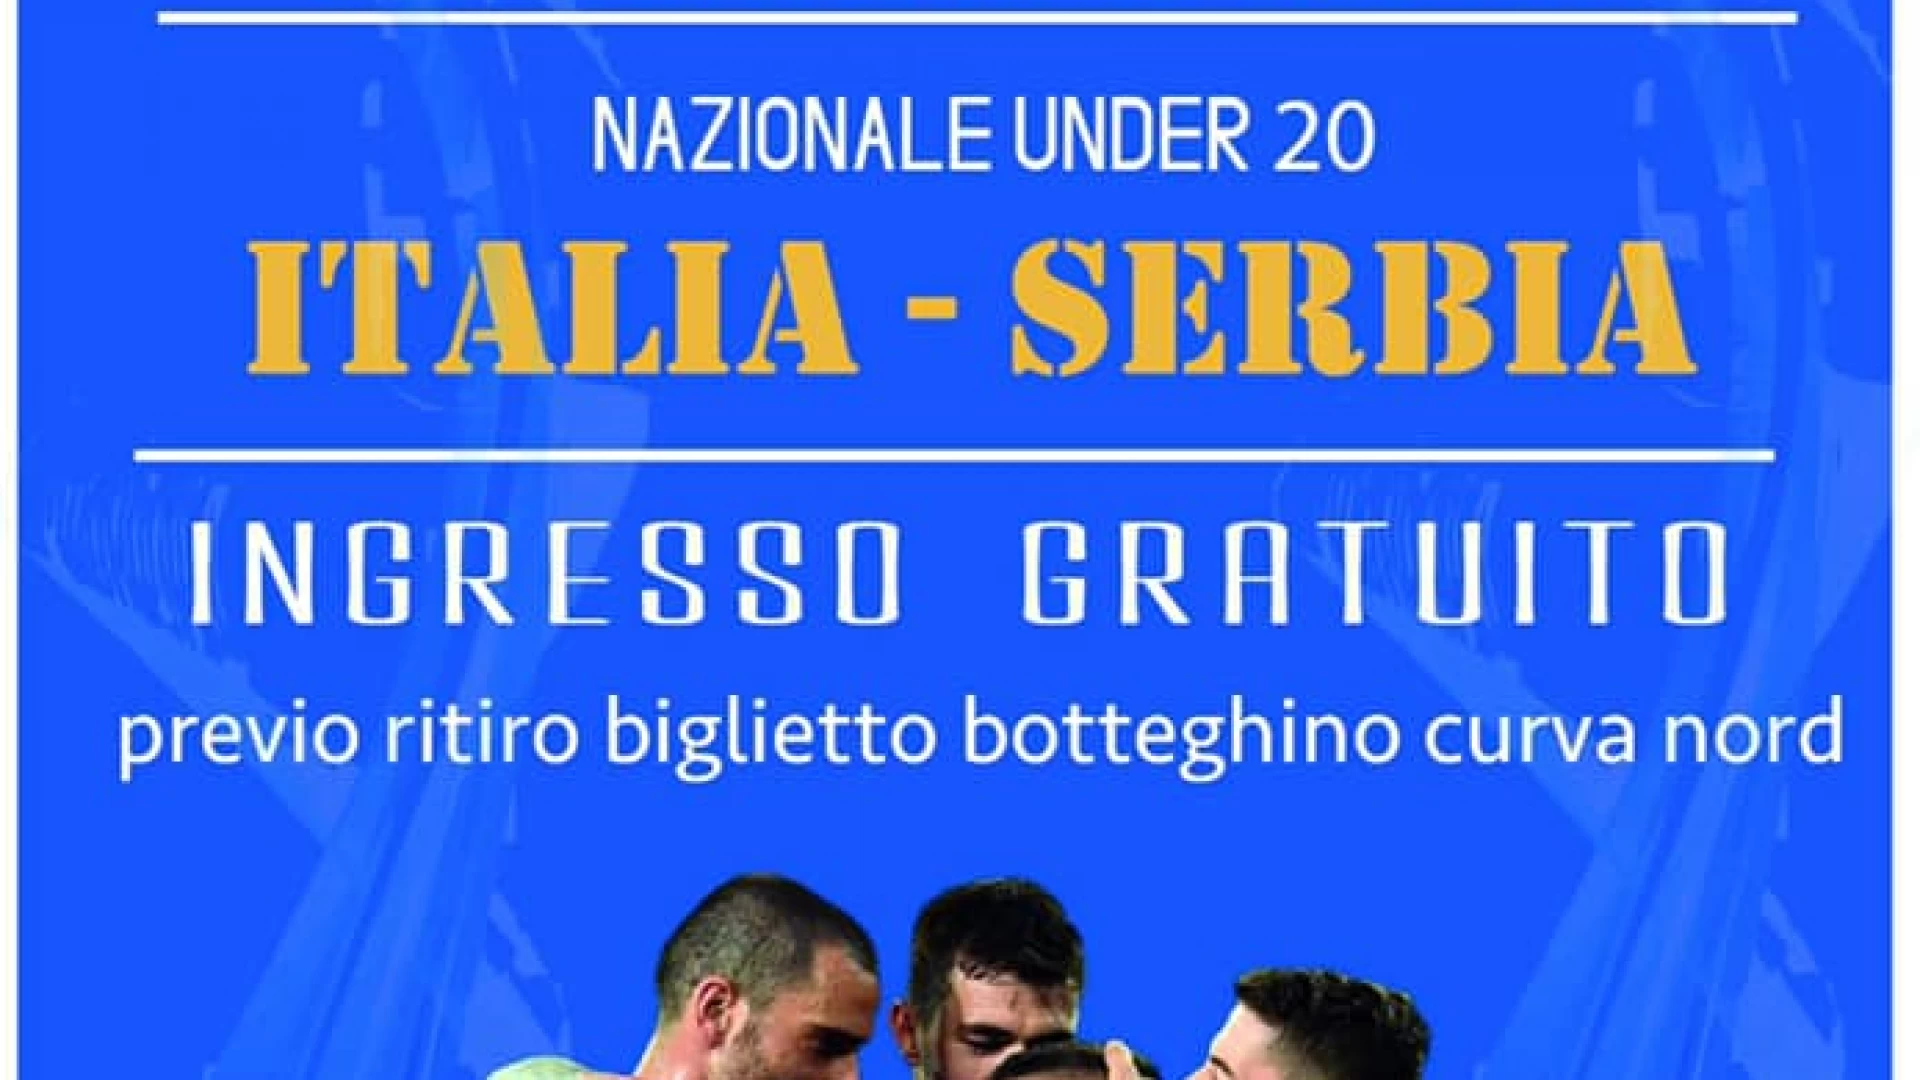 Castel Di Sangro: in campo la nazionale Under 20 contro la Serbia. Ingresso gratuito